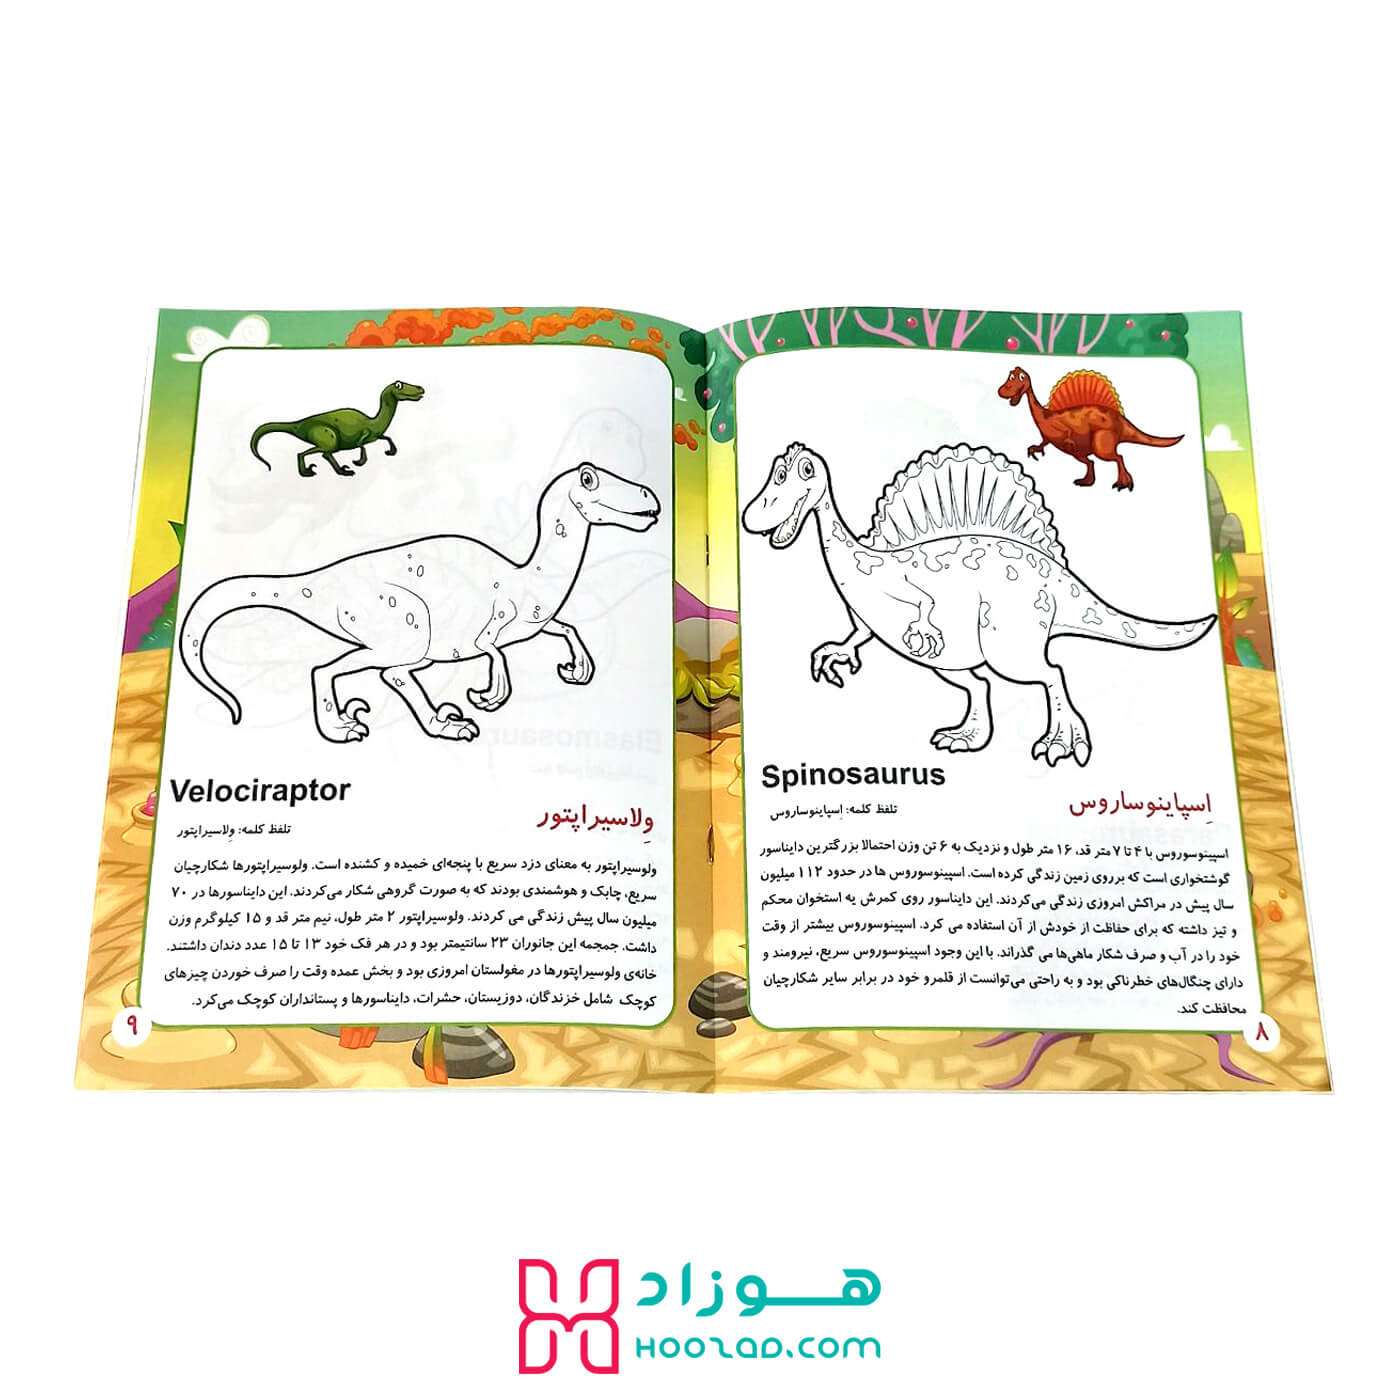 کتاب آموزش جادویی دایناسورها برای کودکان نمونه صفحه کتاب